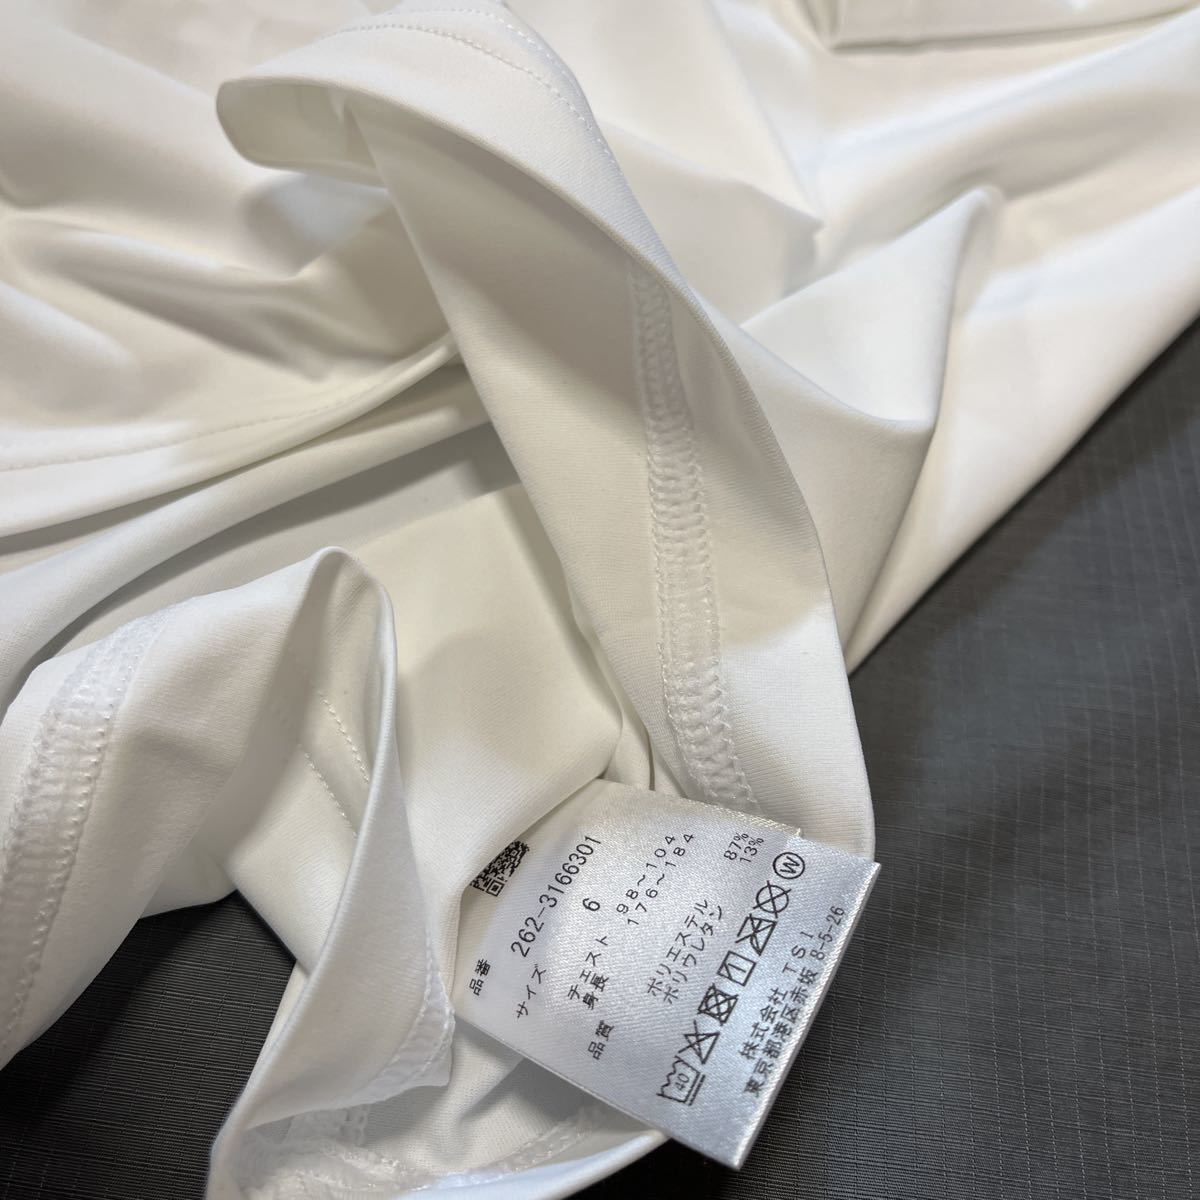 新品正規品 ジャックバニー パーリーゲイツ サイズ5 最新作 ツルツル素材 薄手 UV対策に モックネック インナーシャツ ホワイト 送料無料の画像8